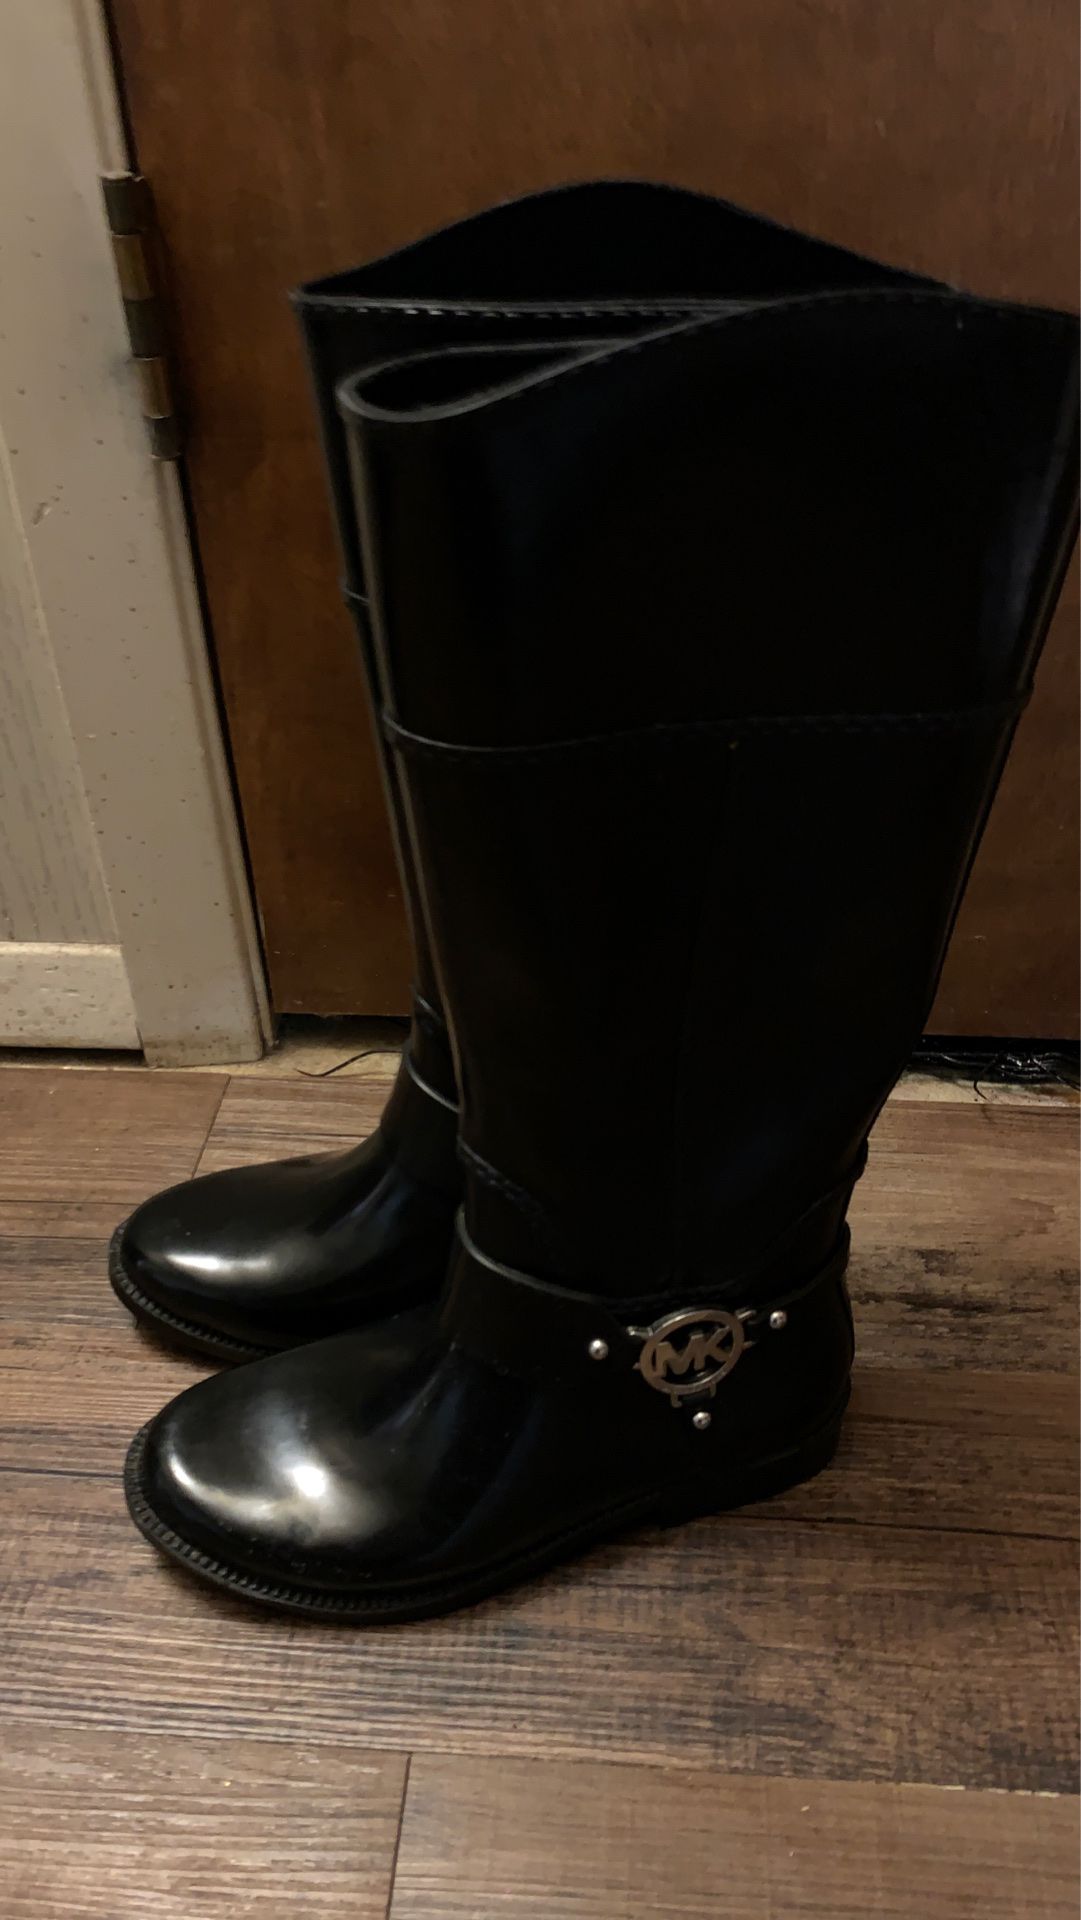 Mk rain boots